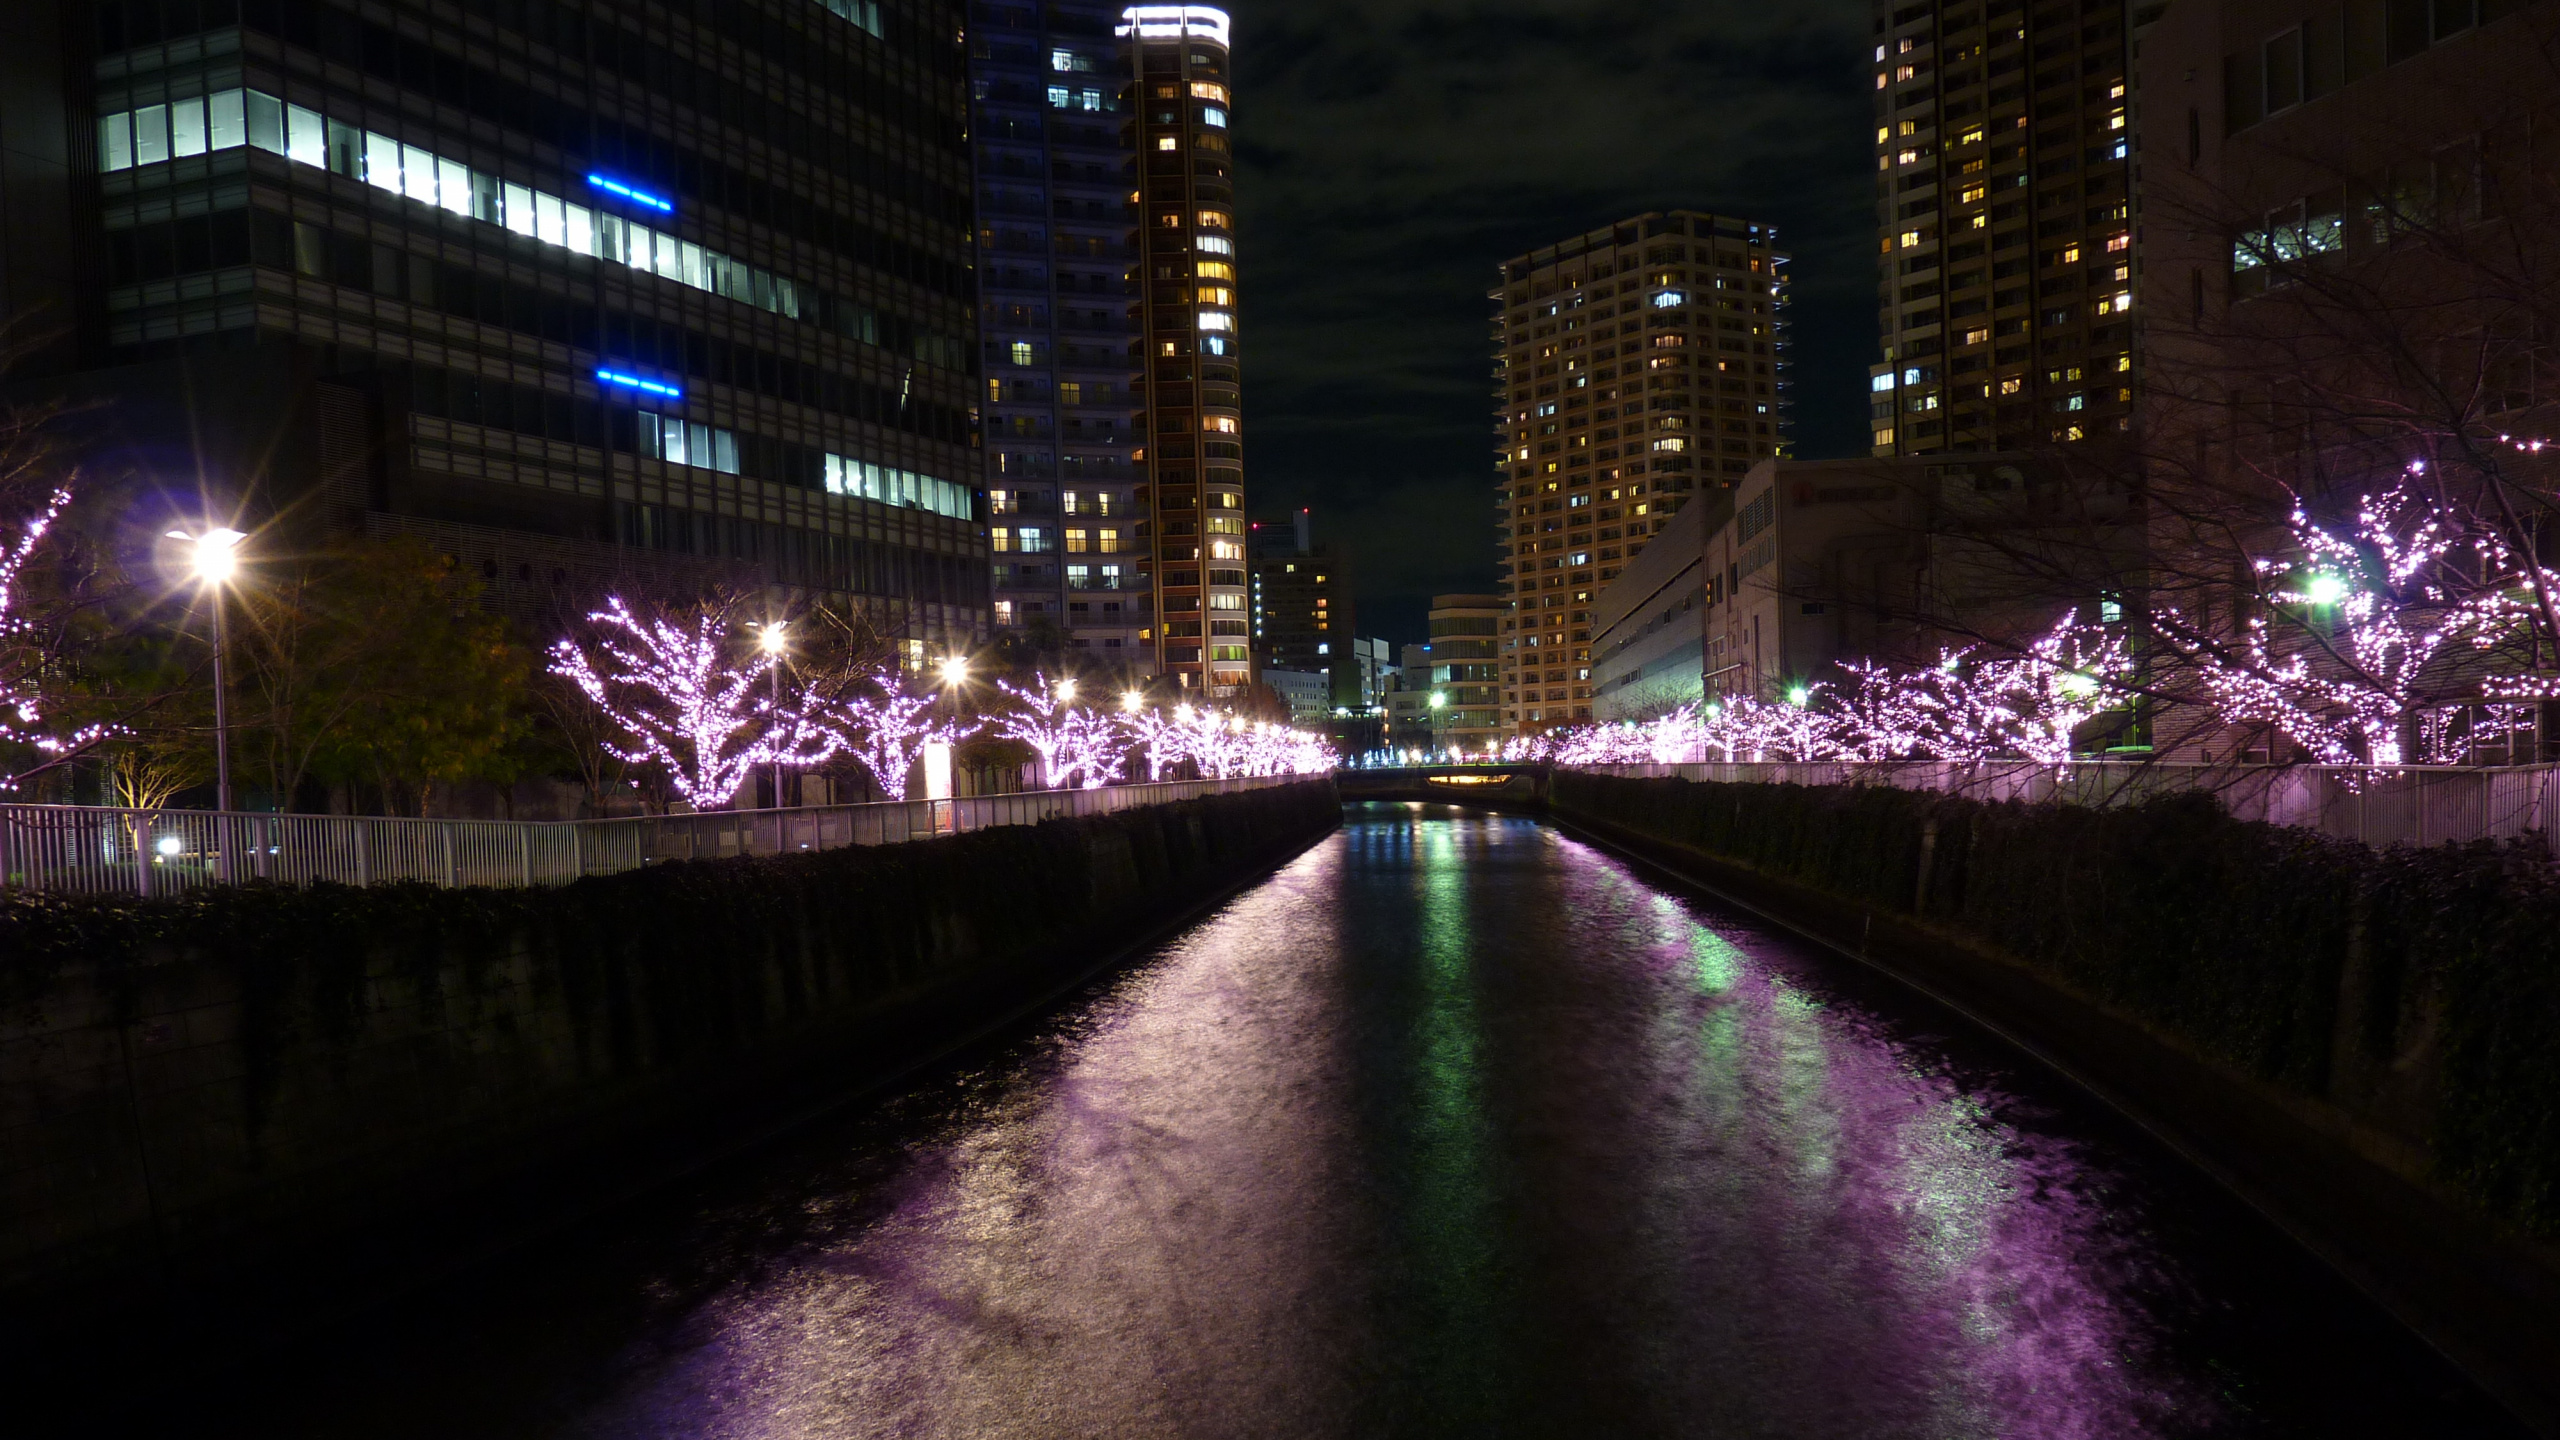 Lumières Violettes Sur le Pont Pendant la Nuit. Wallpaper in 2560x1440 Resolution